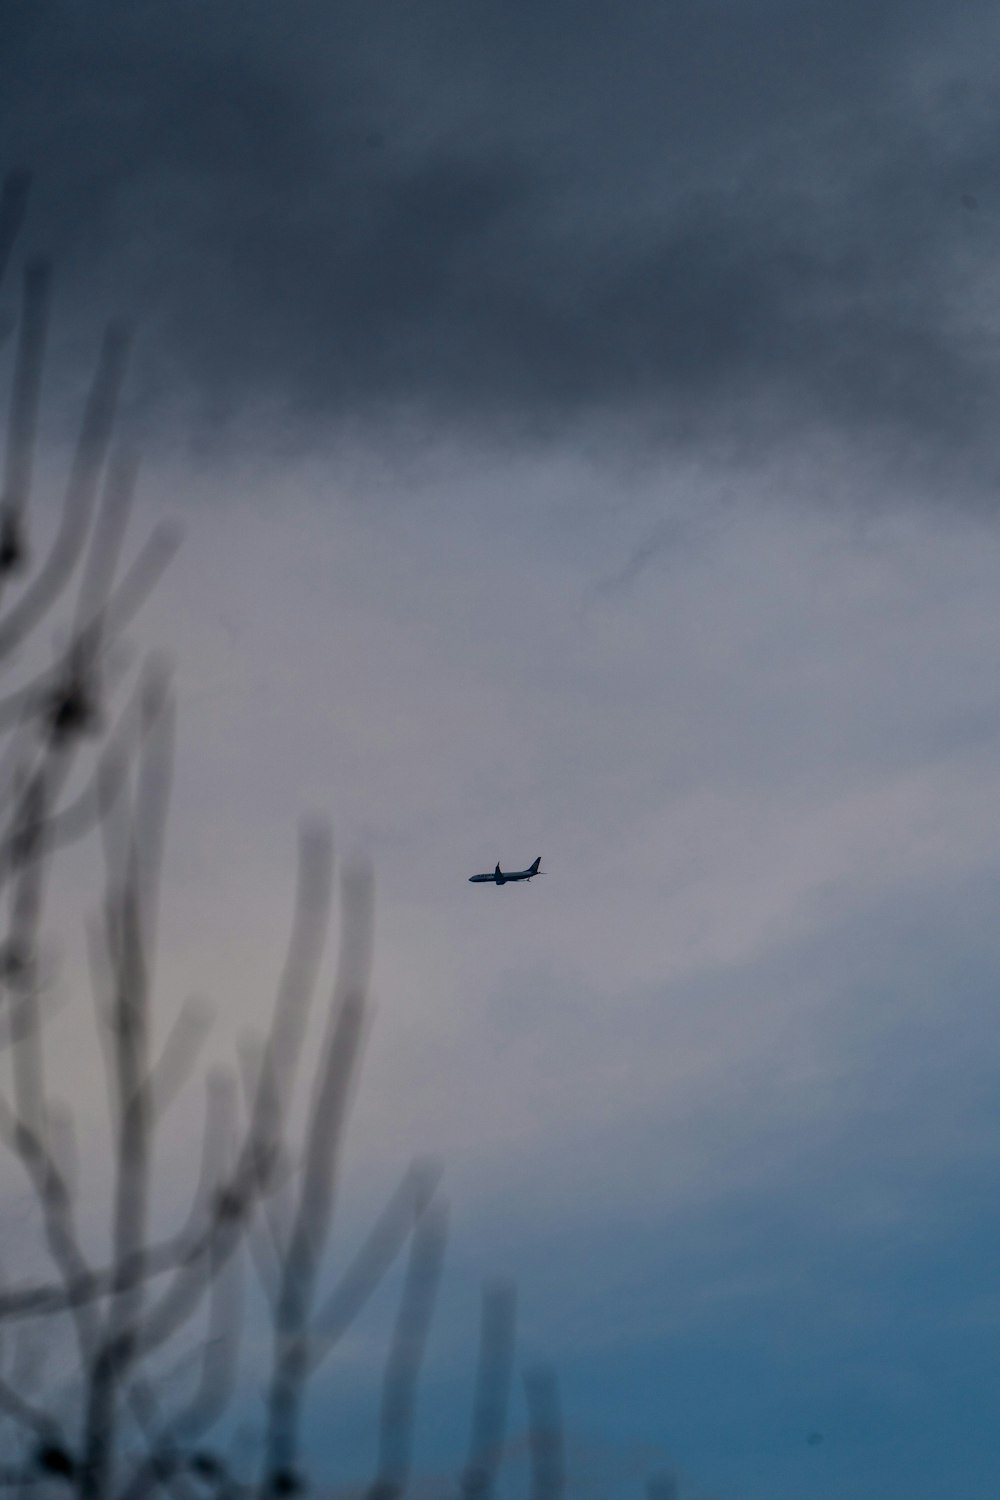 구름 낀 하늘을 날아다니는 비행기 한 그루, 전경에 나무가 있는 모습